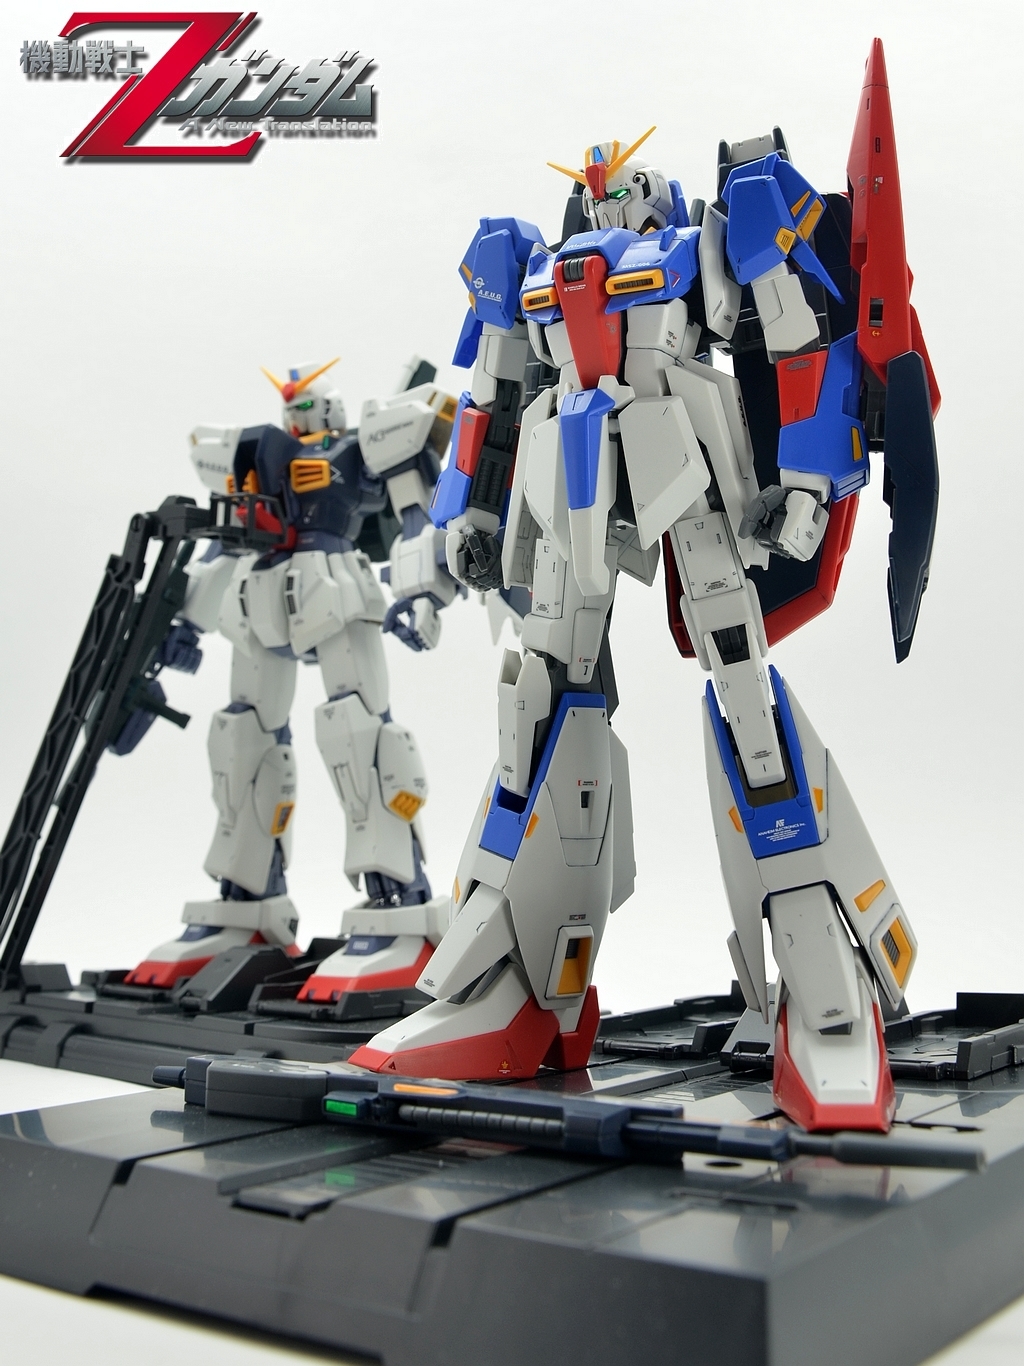 GUNDAM GUY: MG 1/100 Zeta Gundam 2.0 - Painted Build